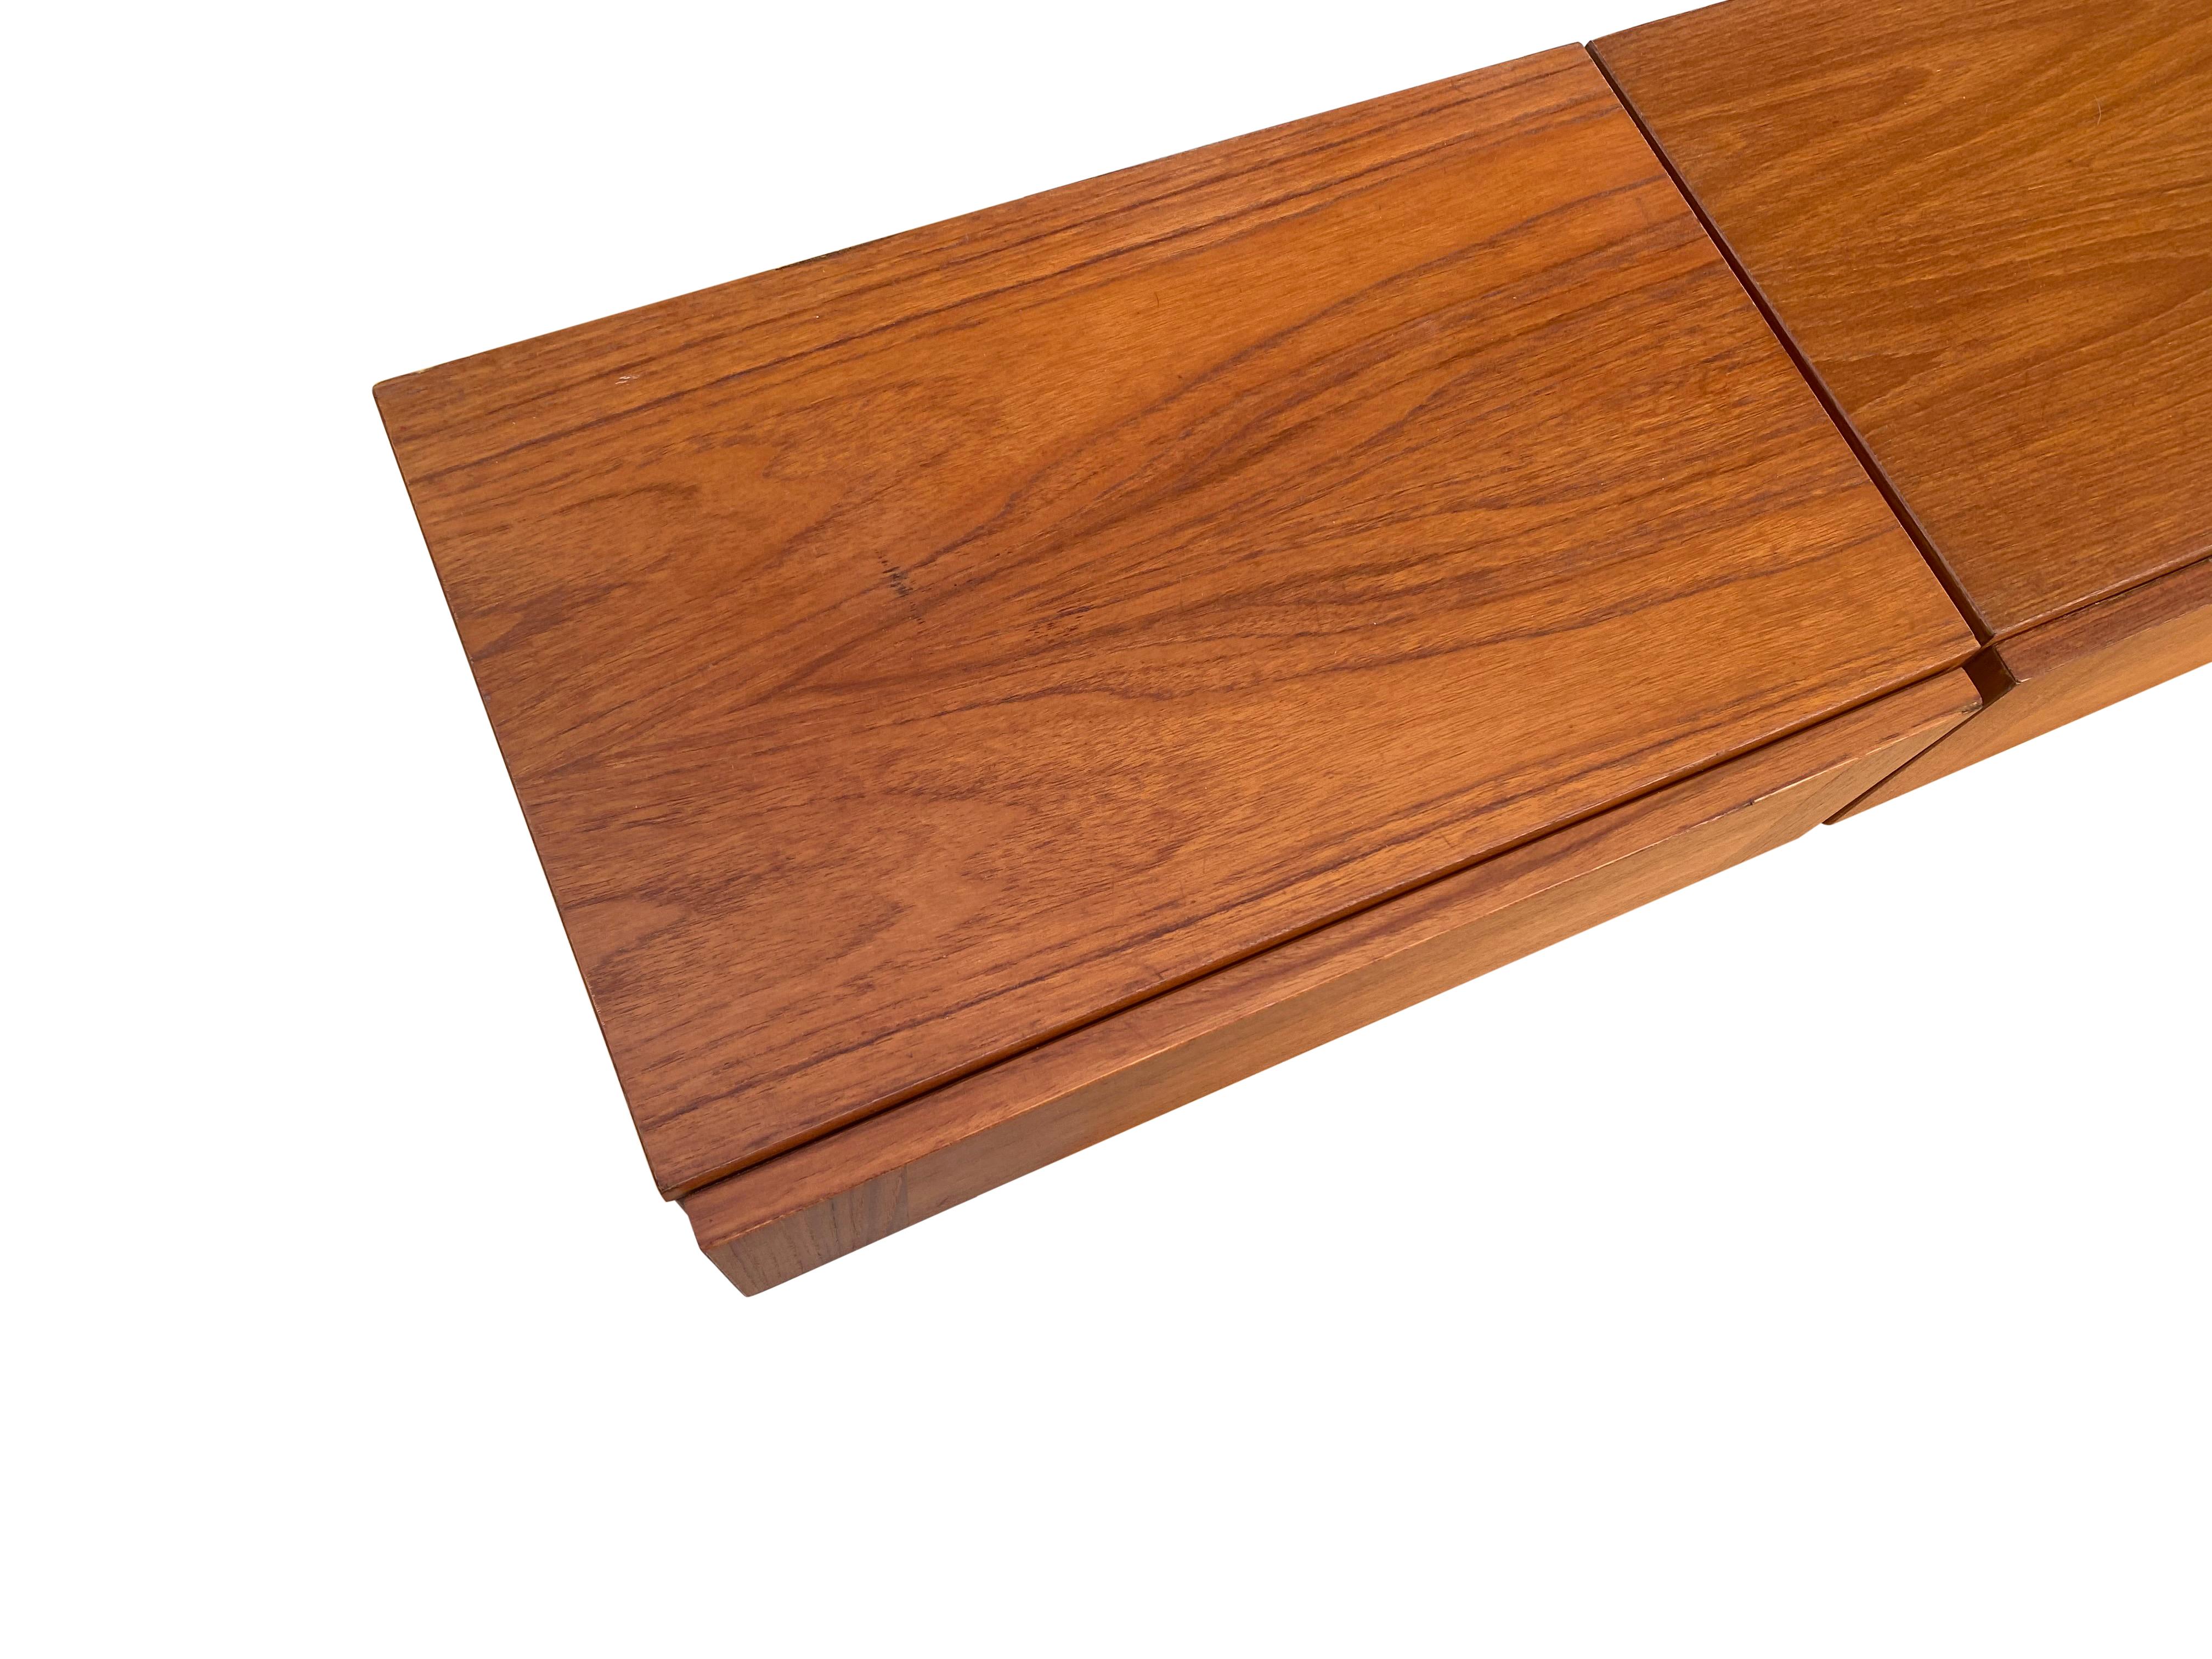 Tables de nuit modernes danoises en teck. Des tons chauds et des motifs subtils de grain de bois. Les tiroirs fonctionnent correctement. En bon état vintage. Doublé de velours. Suffisamment compact pour les petits espaces, il offre néanmoins une